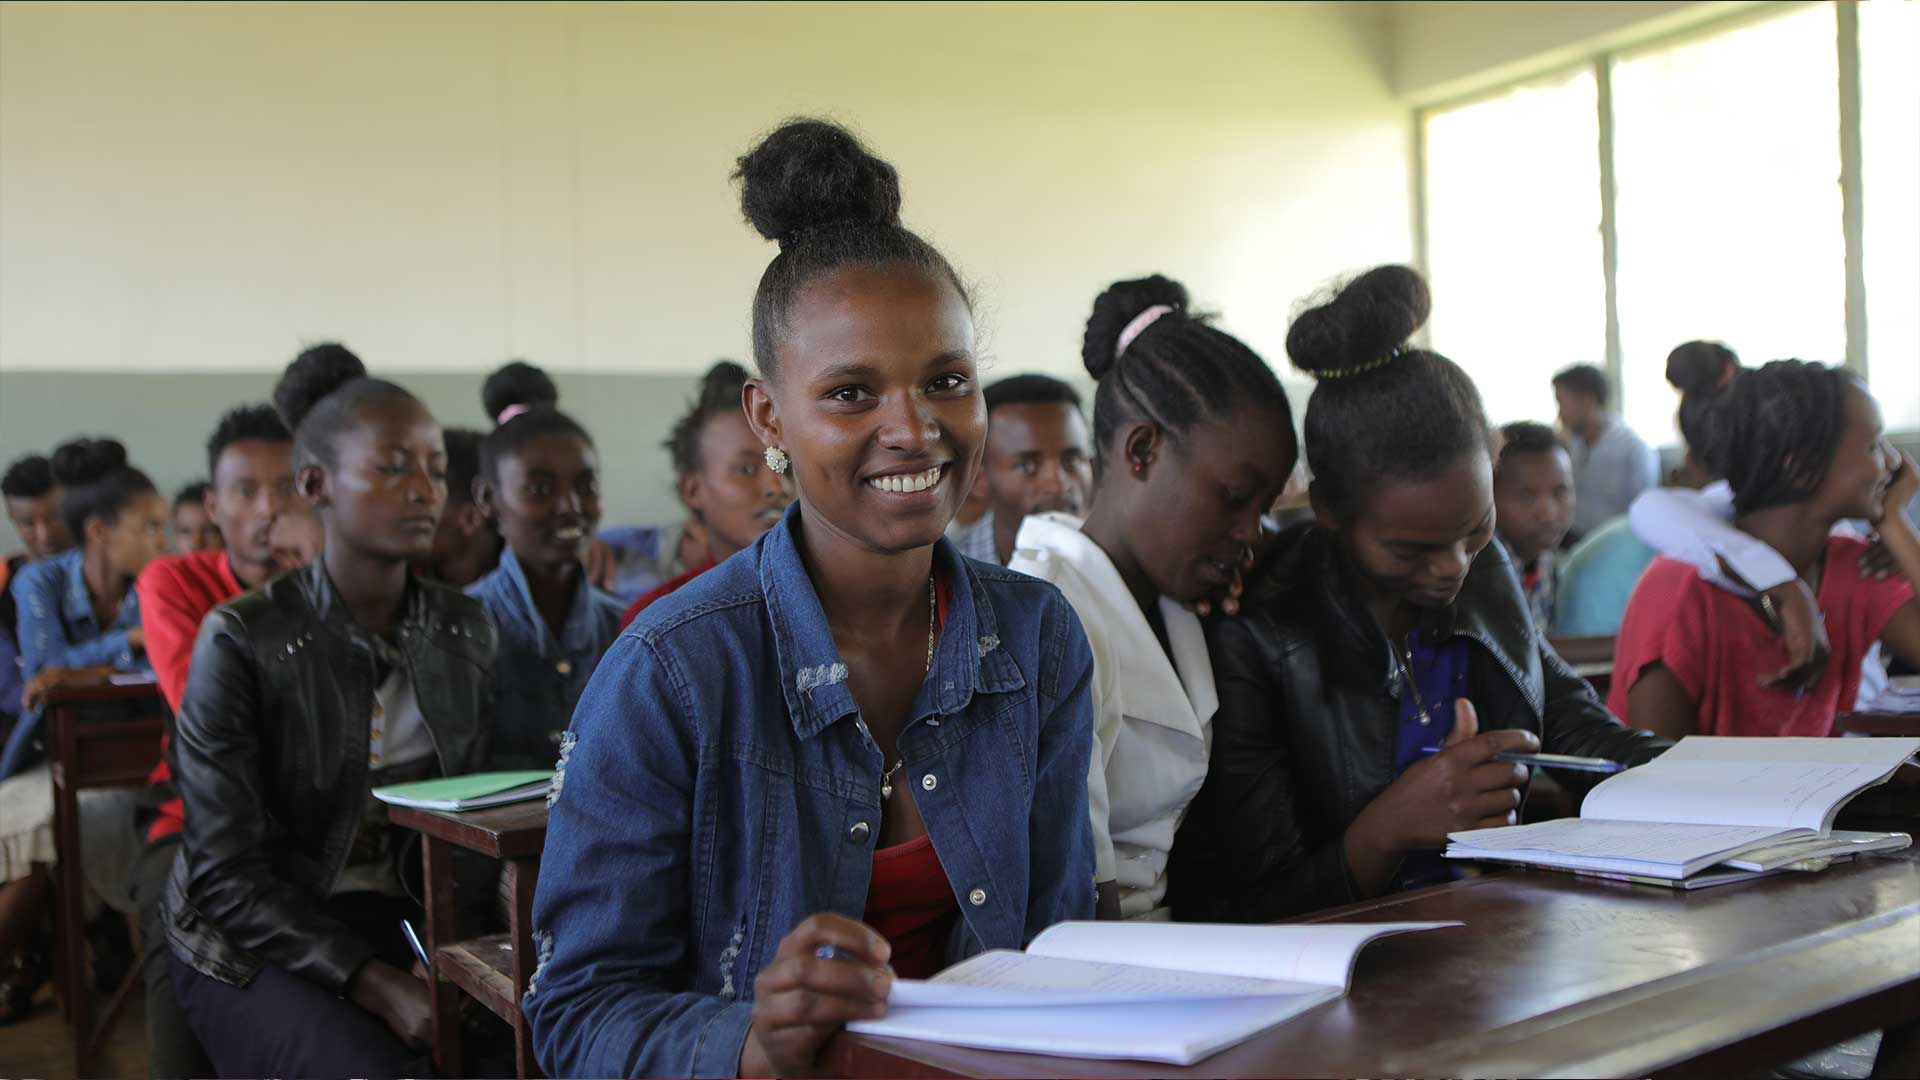 Tigist, eine äthiopische Schülerin sitzt an einer Schulbank und lächelt in die Kamera